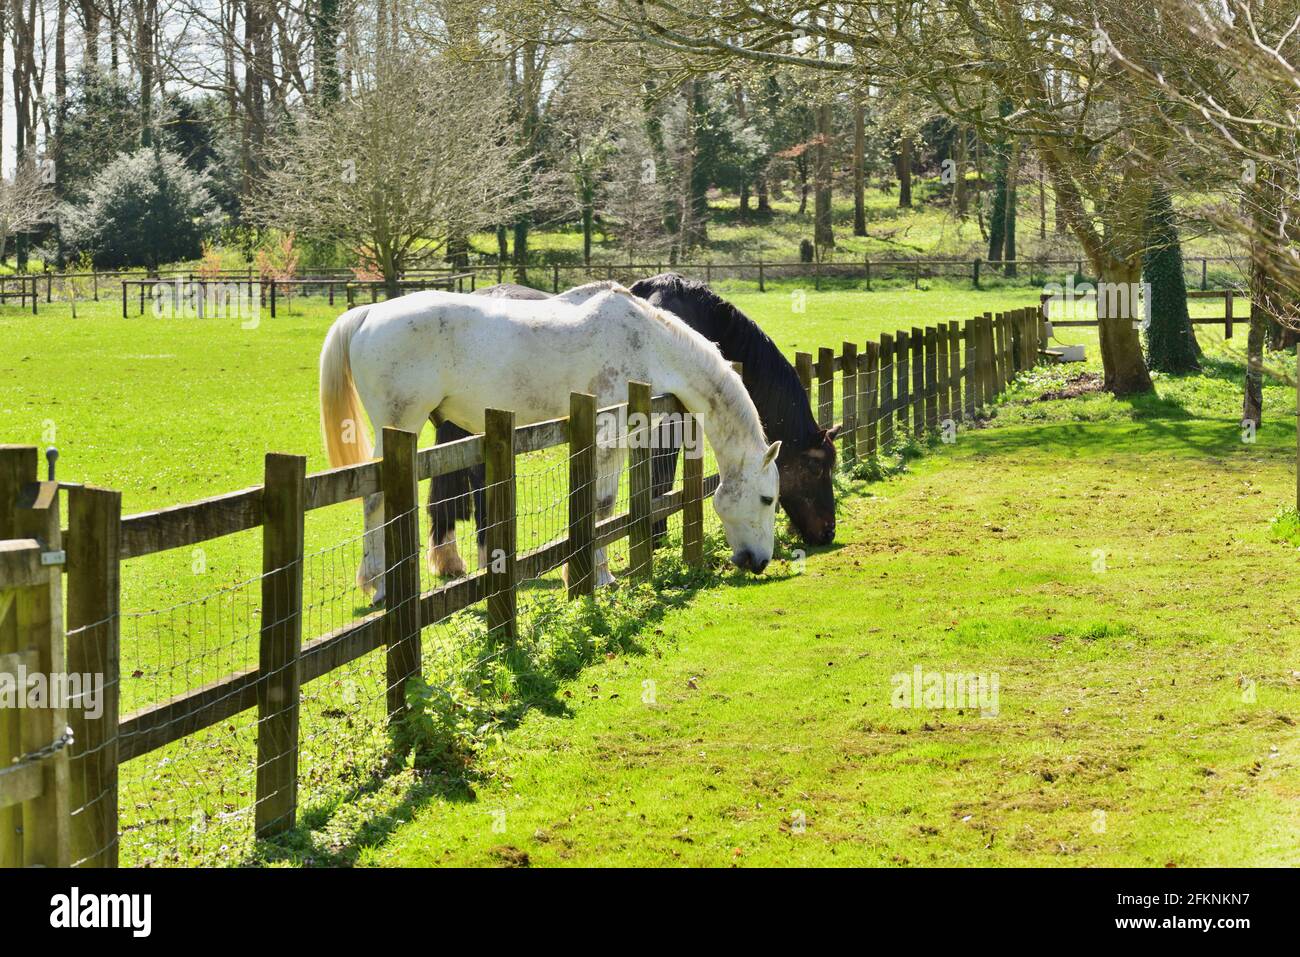 L'erba è sempre più verde sull'altro lato. Due cavalli si appoggiano su una recinzione per mangiare l'erba nel campo adiacente. Foto Stock